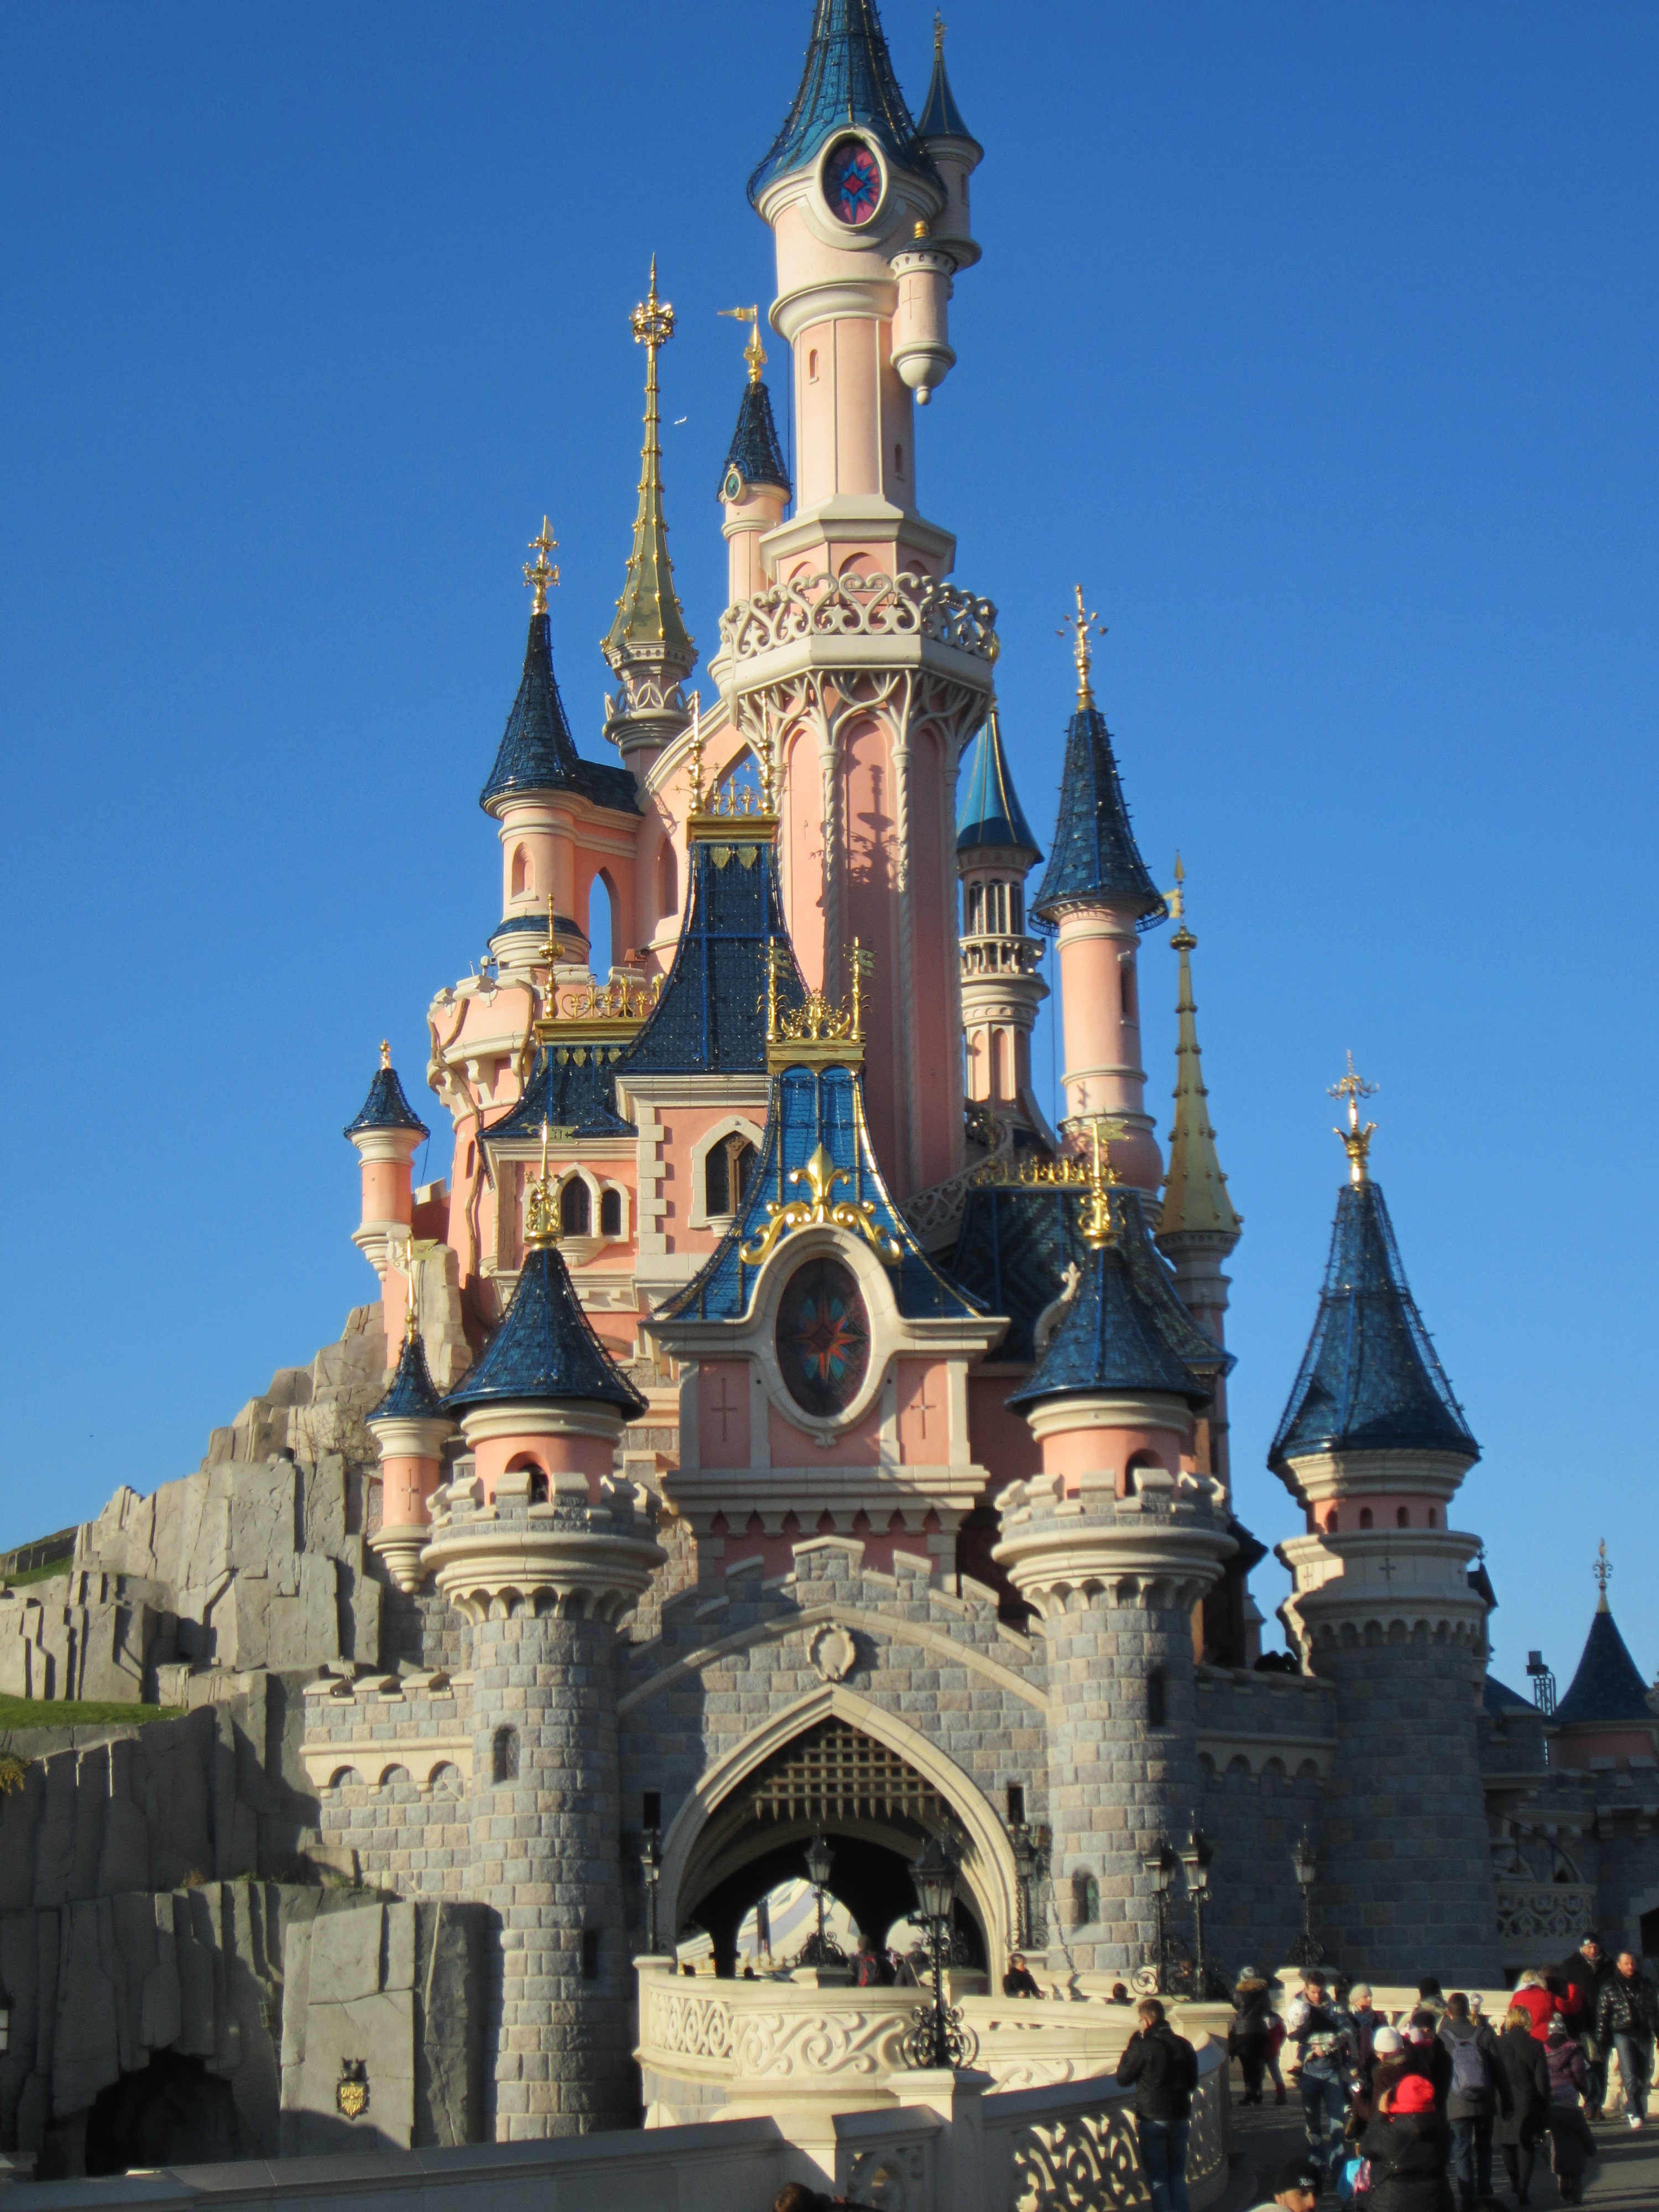 Замок диснейленд. Уолт Дисней замок. Замок Диснейленд в Париже. Диснейленд замок Диснея. Замок Золушки в Диснейленде в Париже.